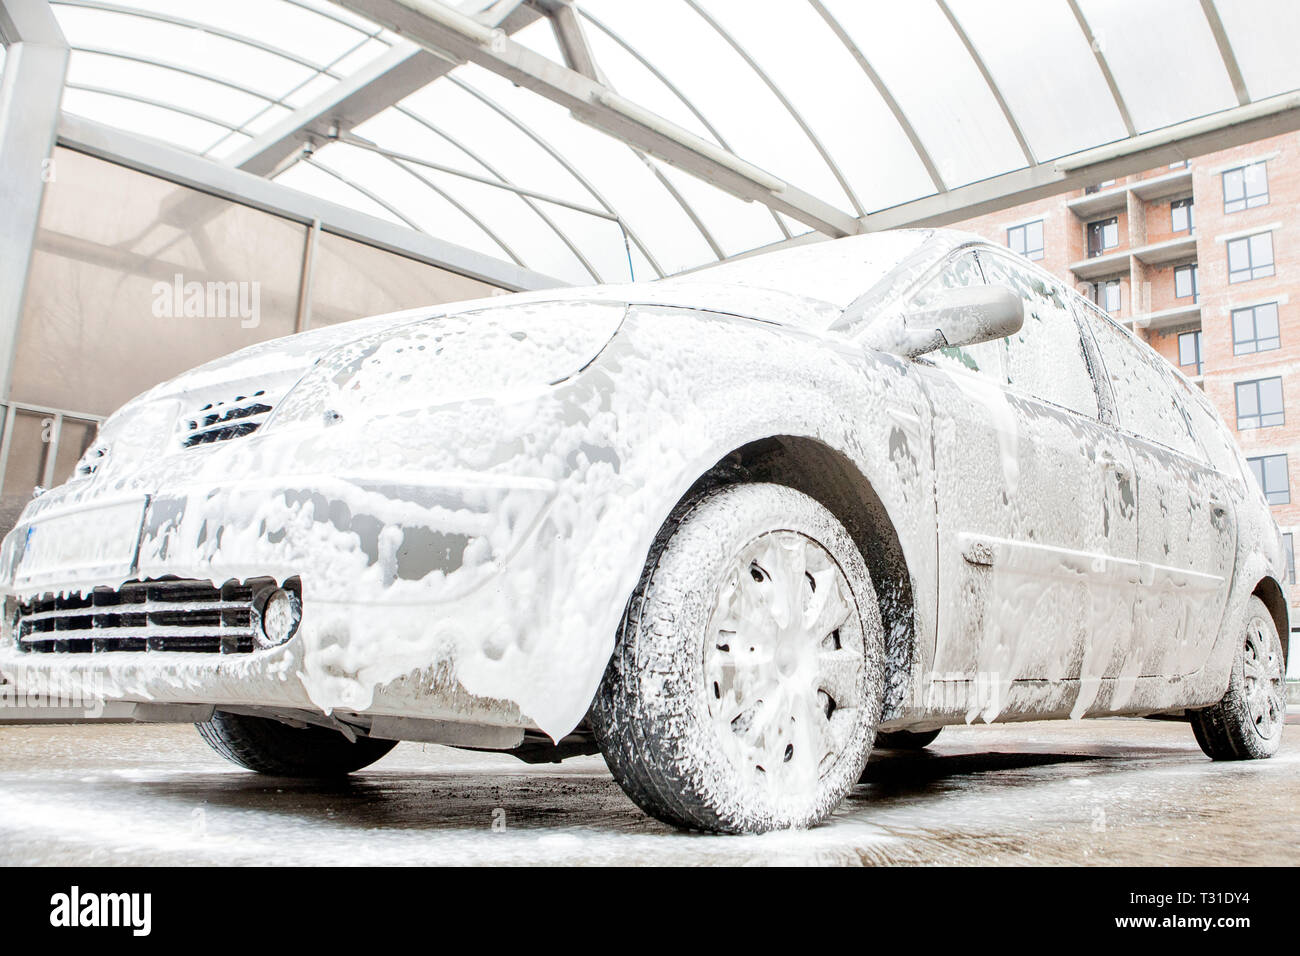 Car wash with foam in car wash station. Carwash. Washing machine